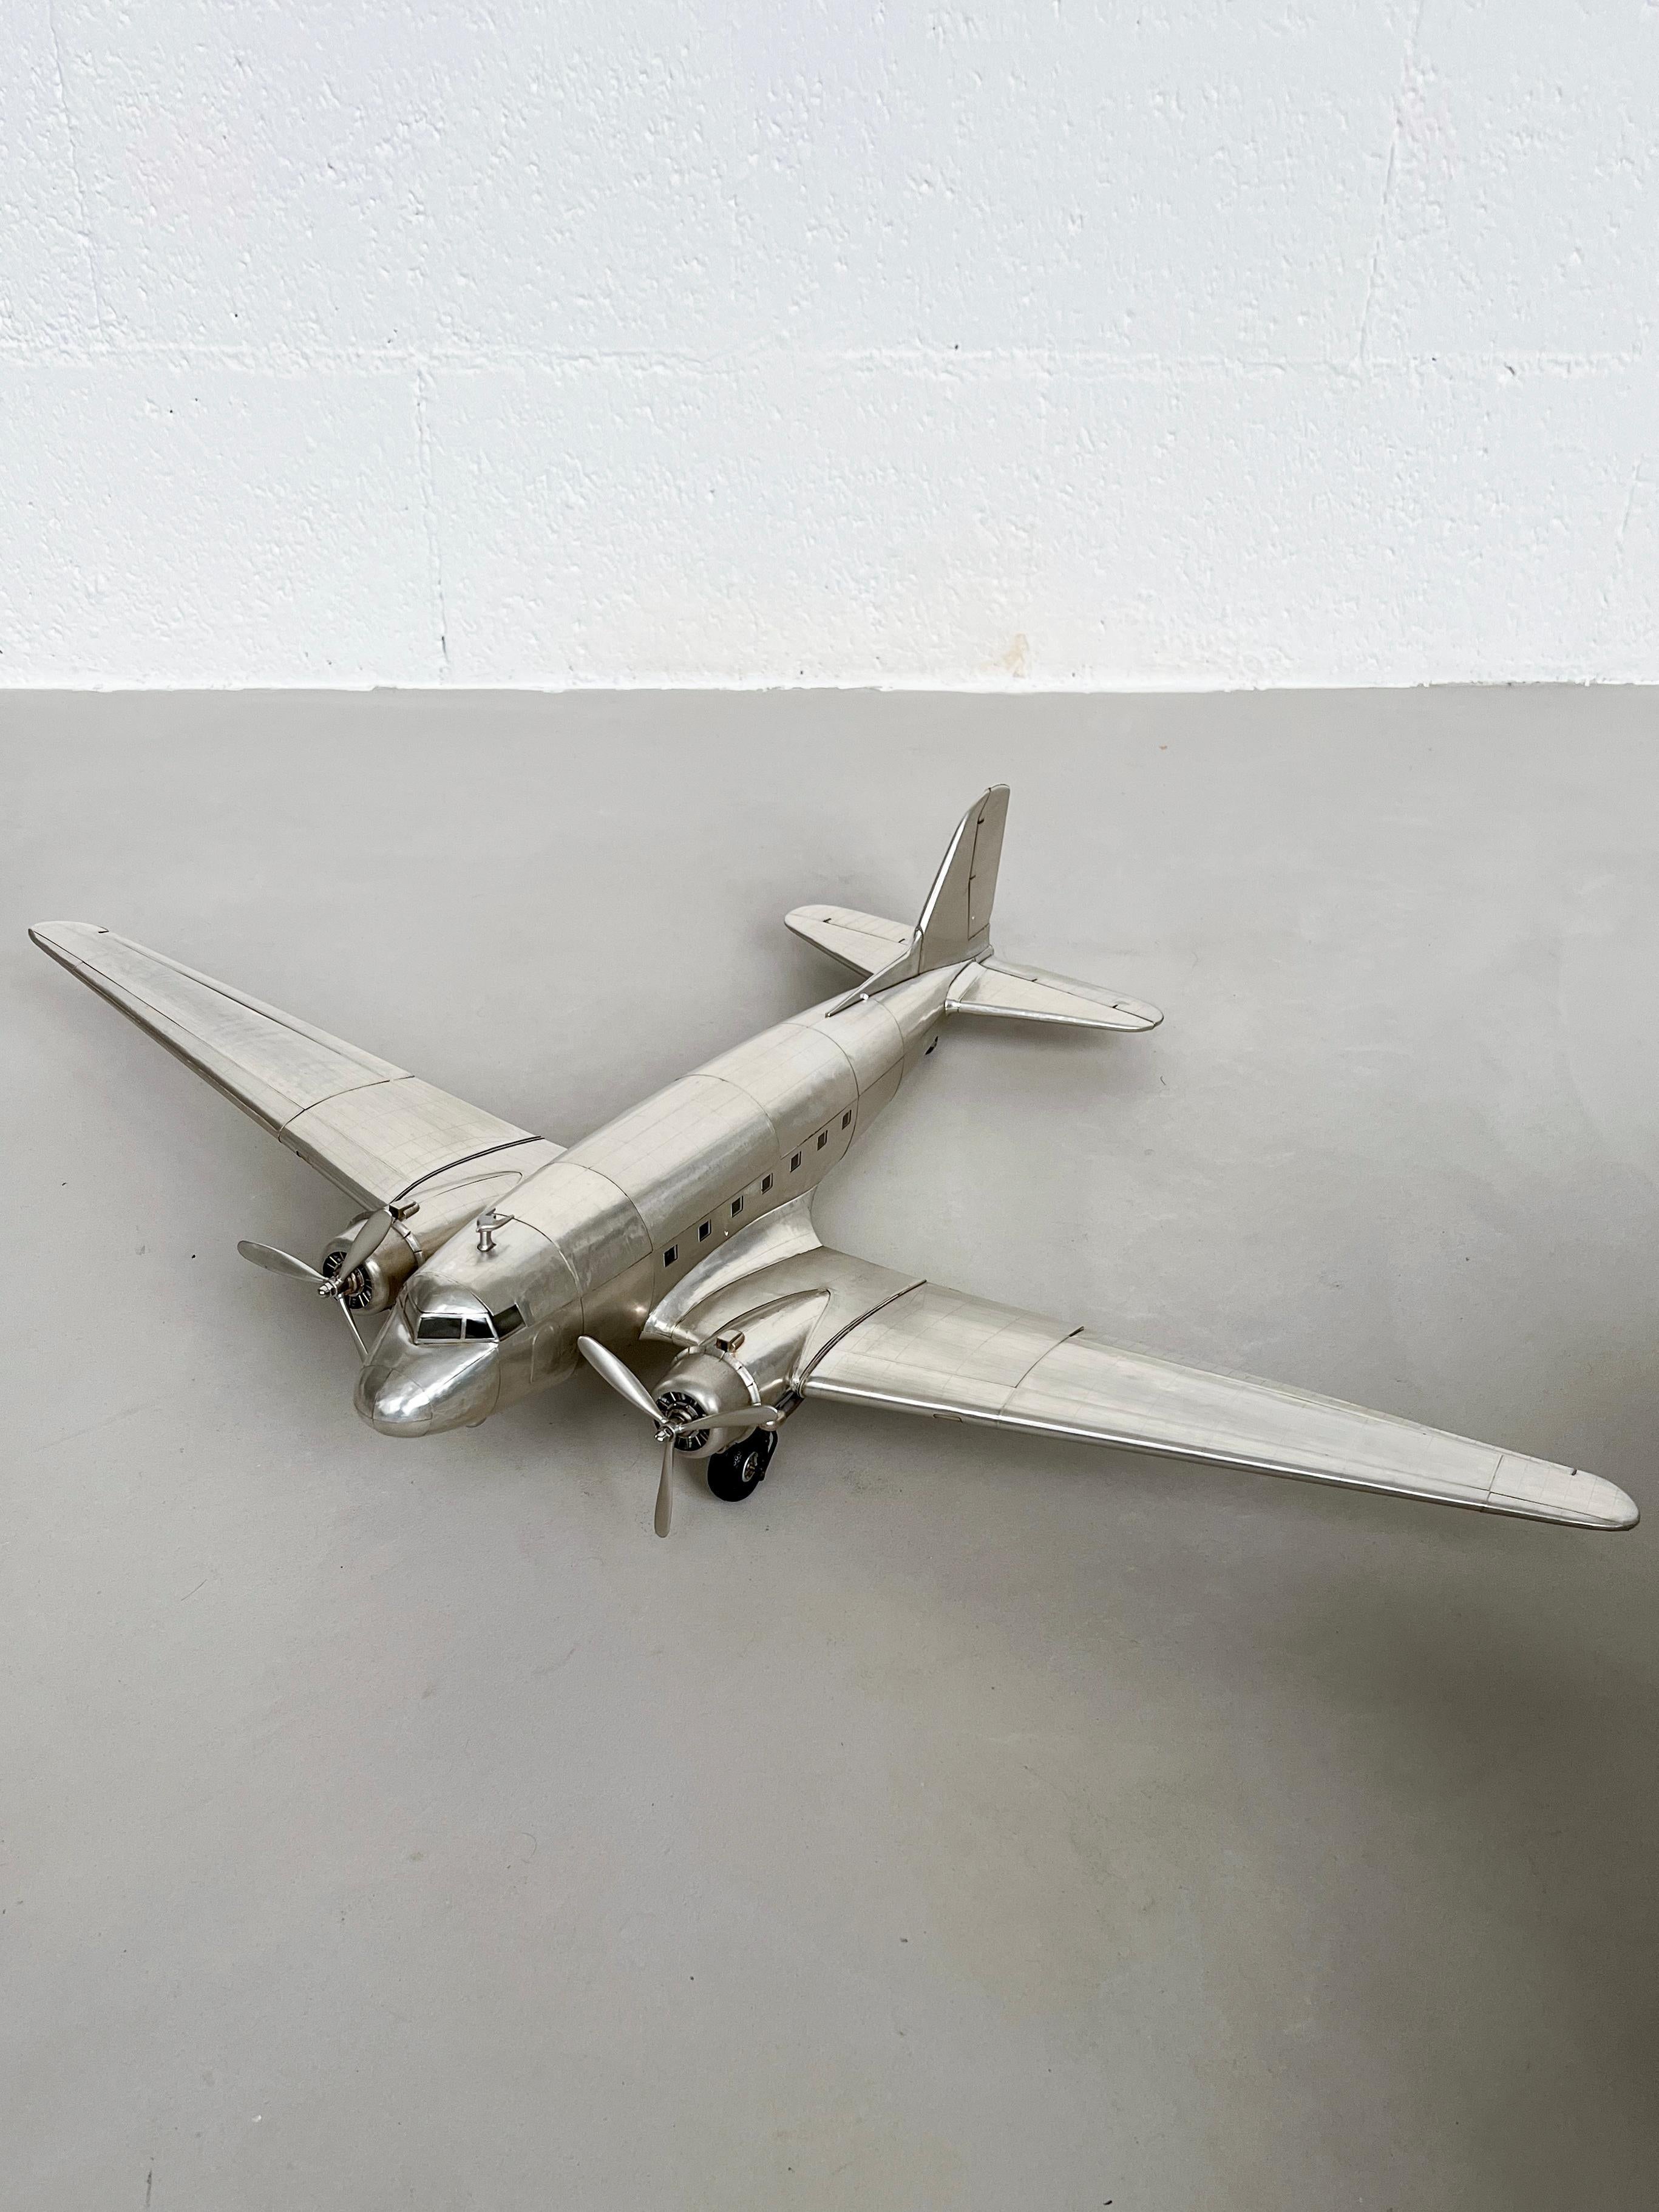 Flugzeug-Skulptur - Regaldekoration

Dekorieren Sie Ihr Wohnzimmer, Ihr Schlafzimmer oder Ihre Höhle stilvoll mit diesem riesigen Modell der Douglas DC-3 - dem kultigsten Flugzeug des 20. Jahrhunderts, dem Modell, das die Grundlagen für die